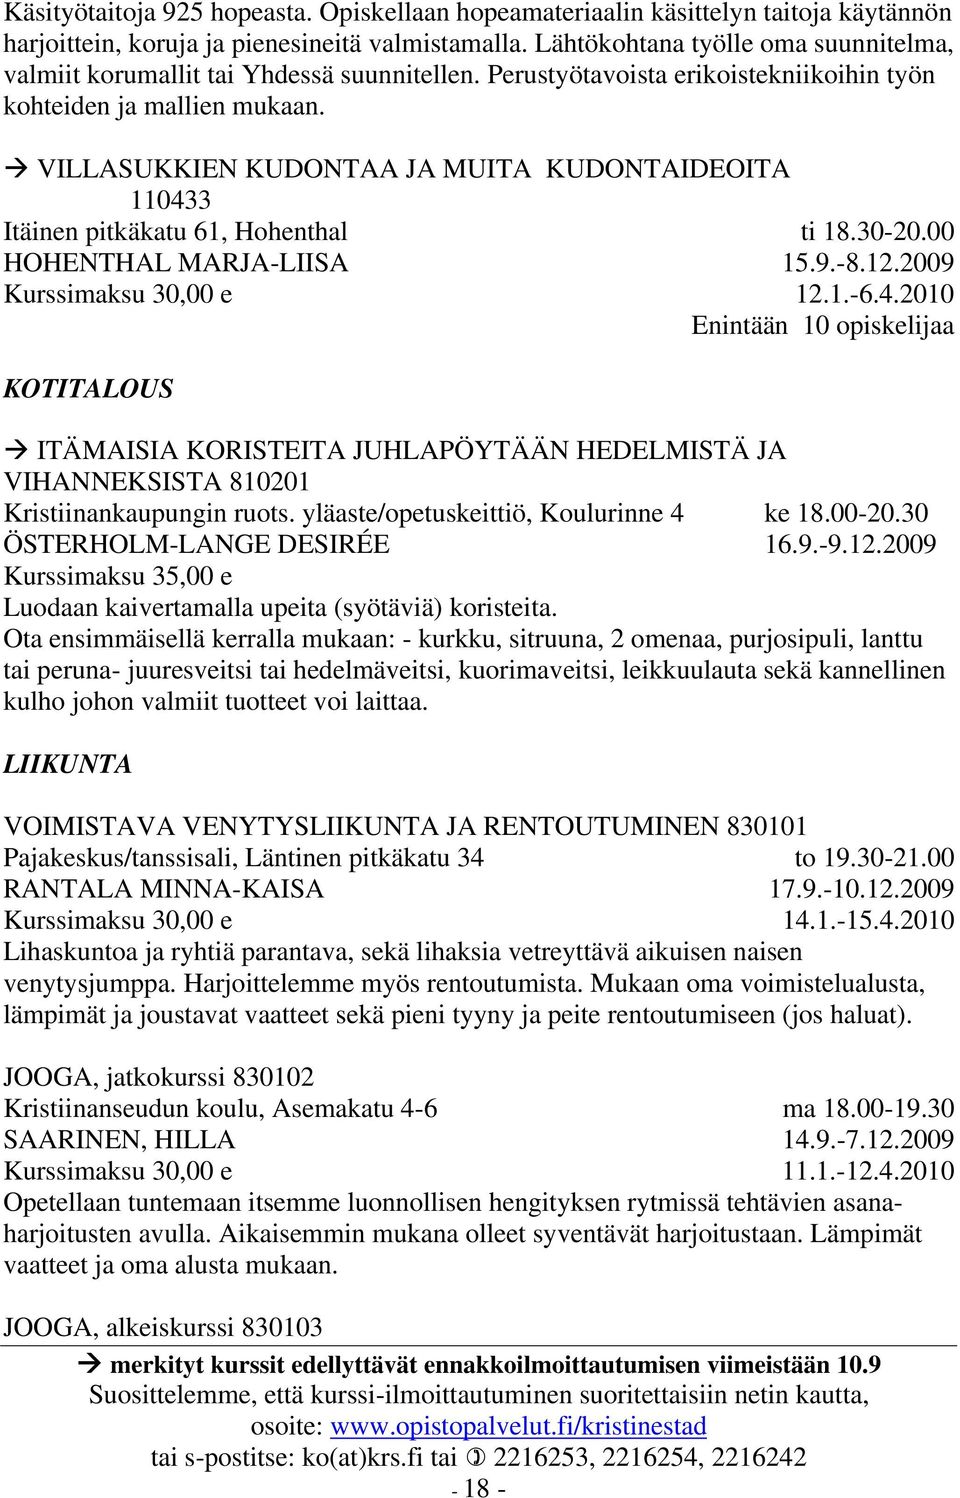 VILLASUKKIEN KUDONTAA JA MUITA KUDONTAIDEOITA 110433 Itäinen pitkäkatu 61, Hohenthal HOHENTHAL MARJA-LIISA KOTITALOUS ti 18.30-20.